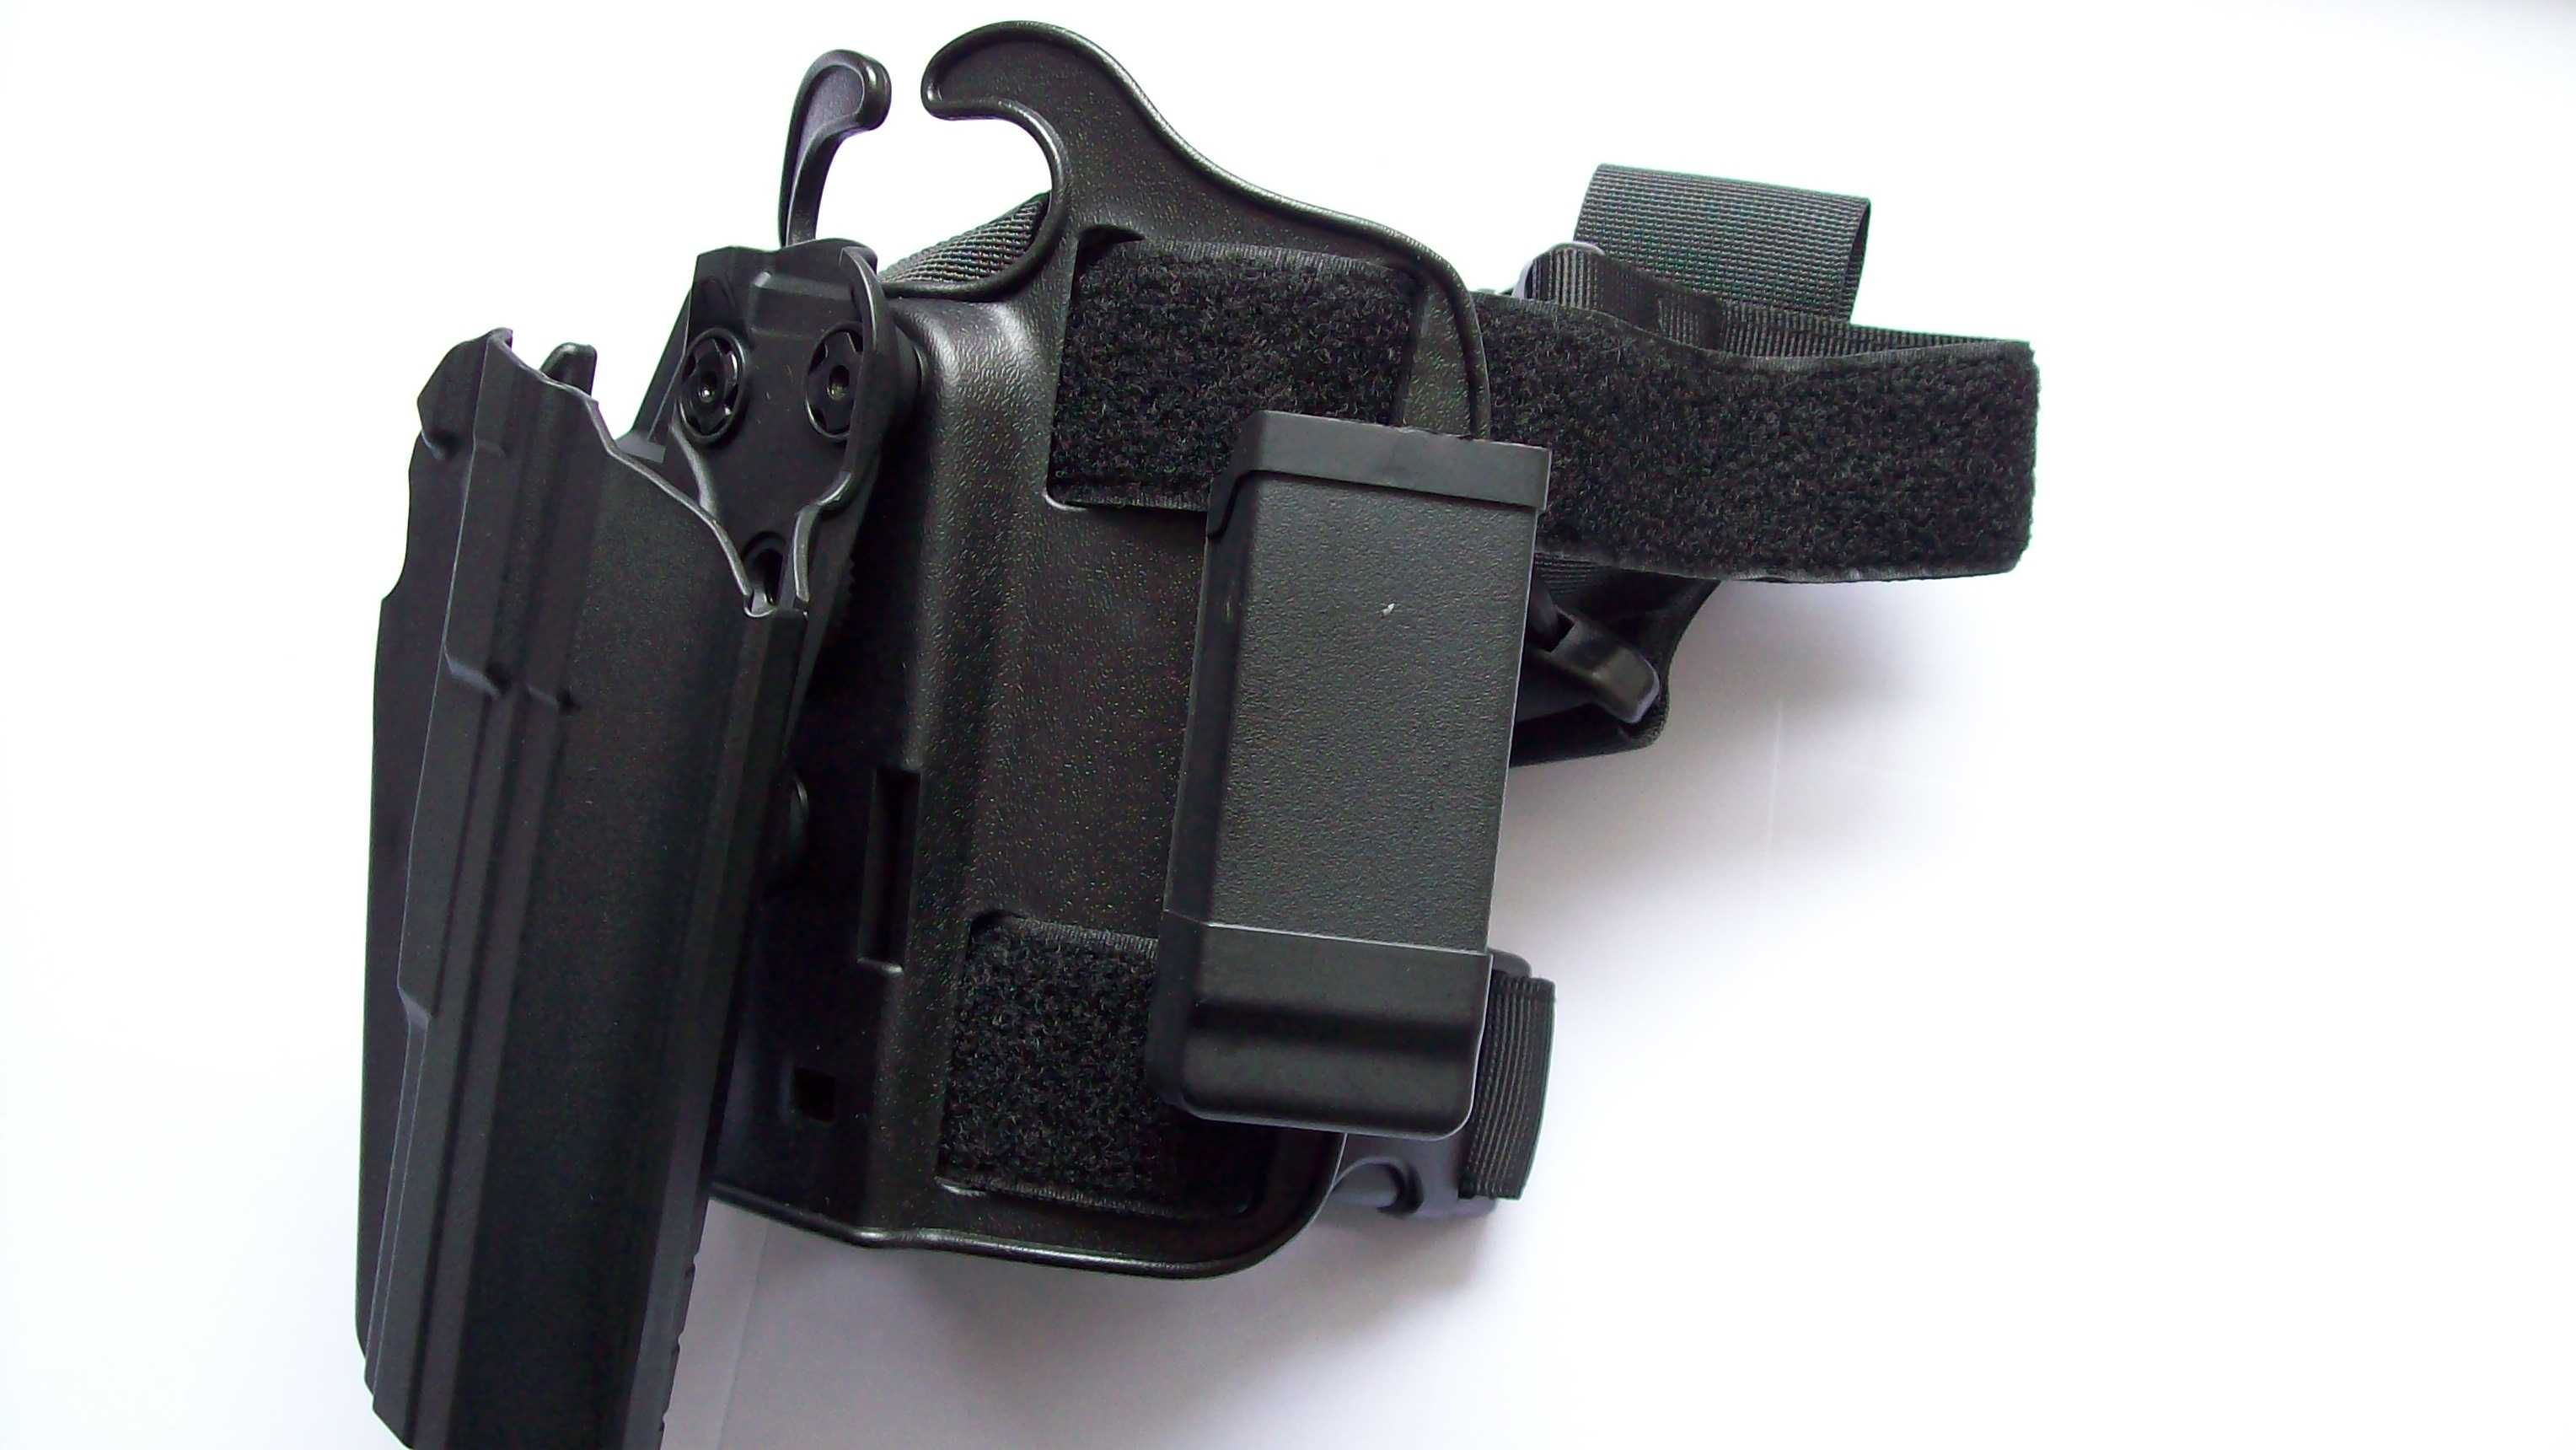 Platforma udowa na pistolet i akcesoria Glock, CZ 75, Colt 1911 i inne